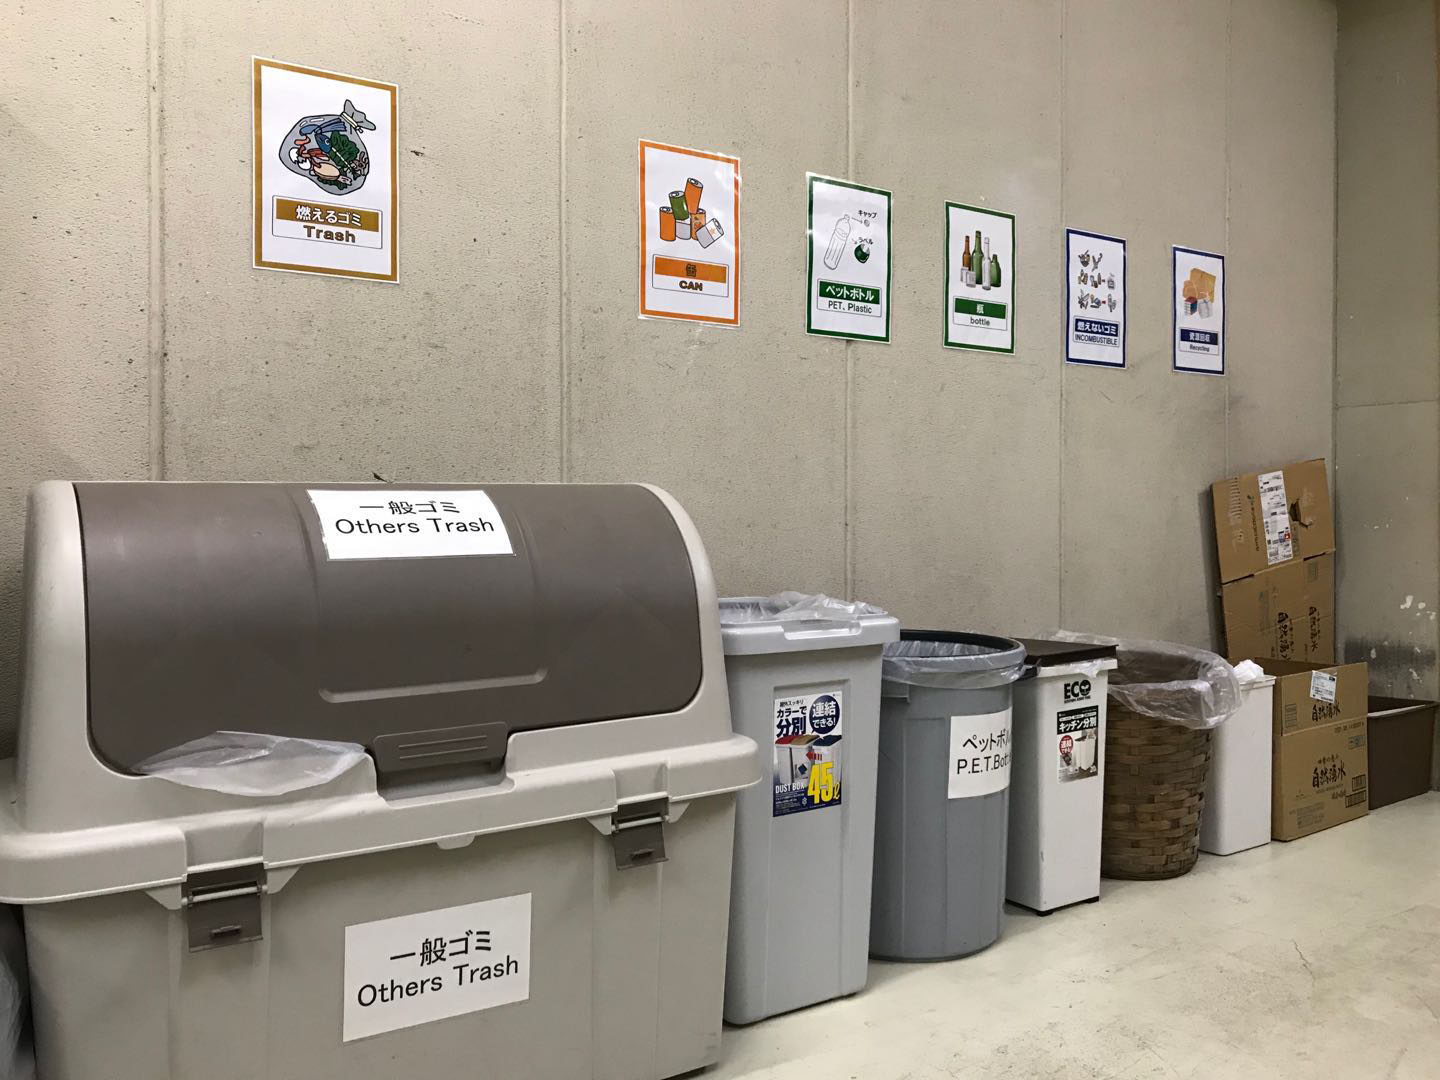 Recycling bin area